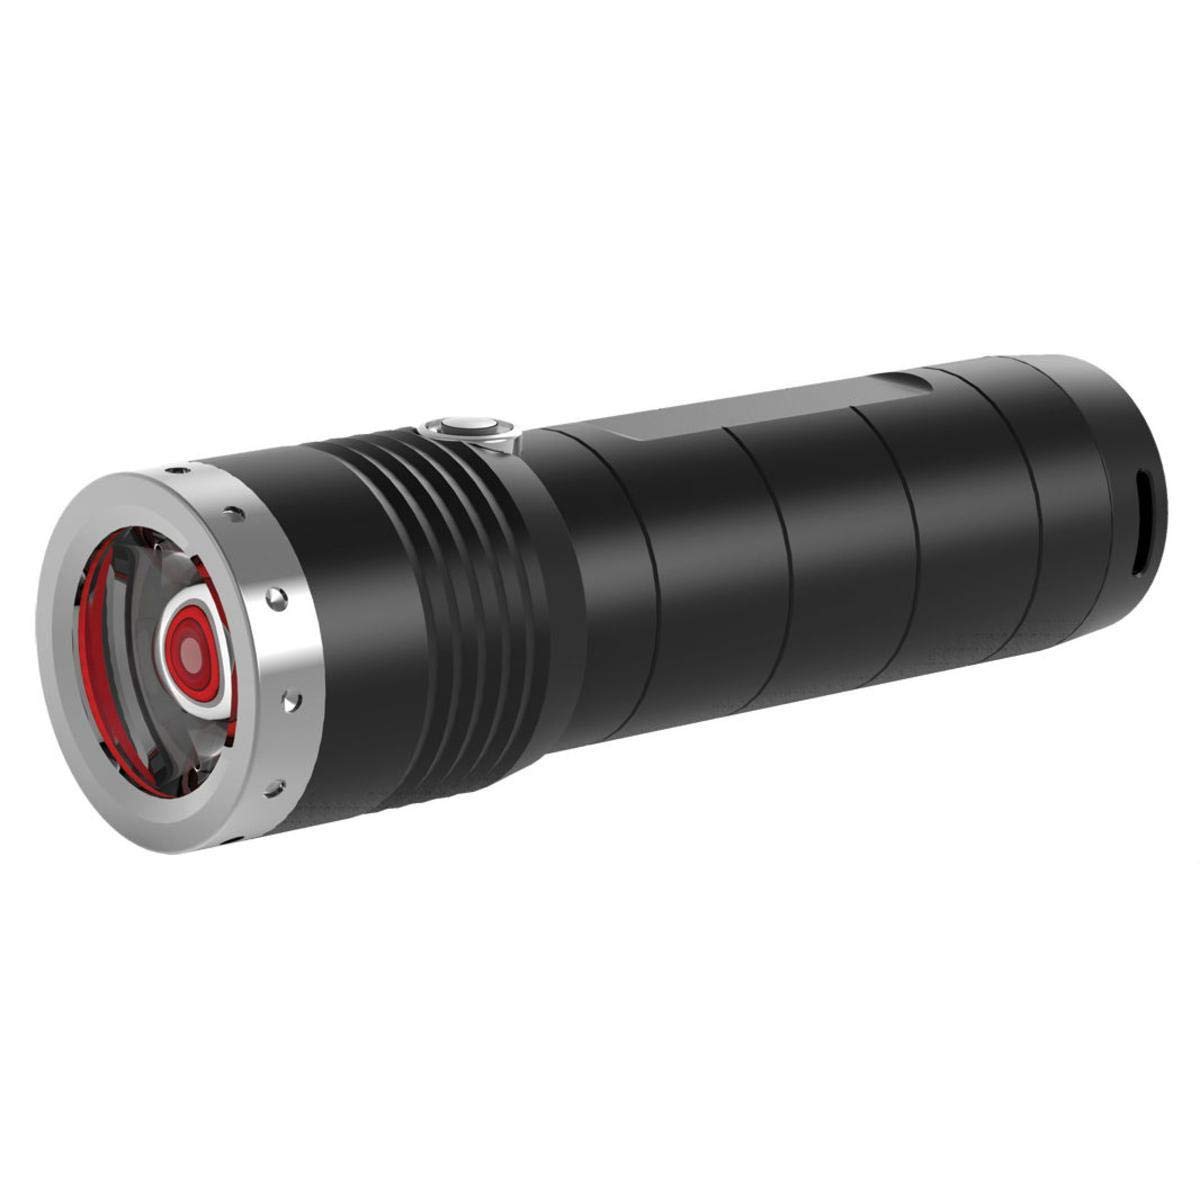 Ledlenser MT6 LED-Taschenlampe, Outdoor, fokussierbar, 600 Lumen, 260 Meter Leuchtweite, mit Batterie, Transportsicherung, 1 Stk. von Ledlenser